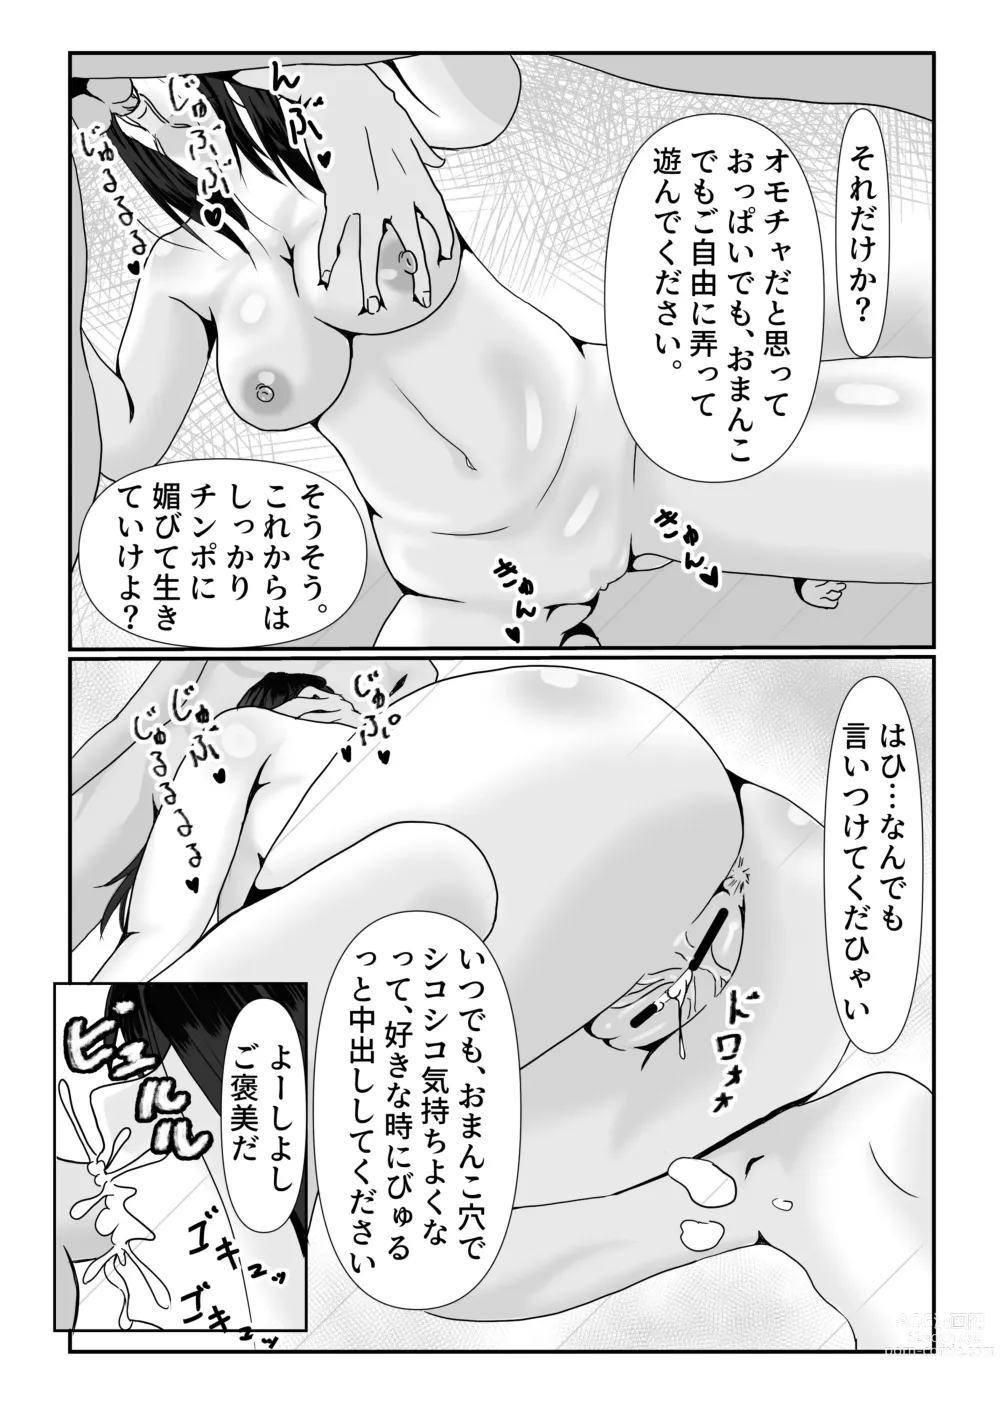 Page 18 of doujinshi Mesu no Shitsuke Kata